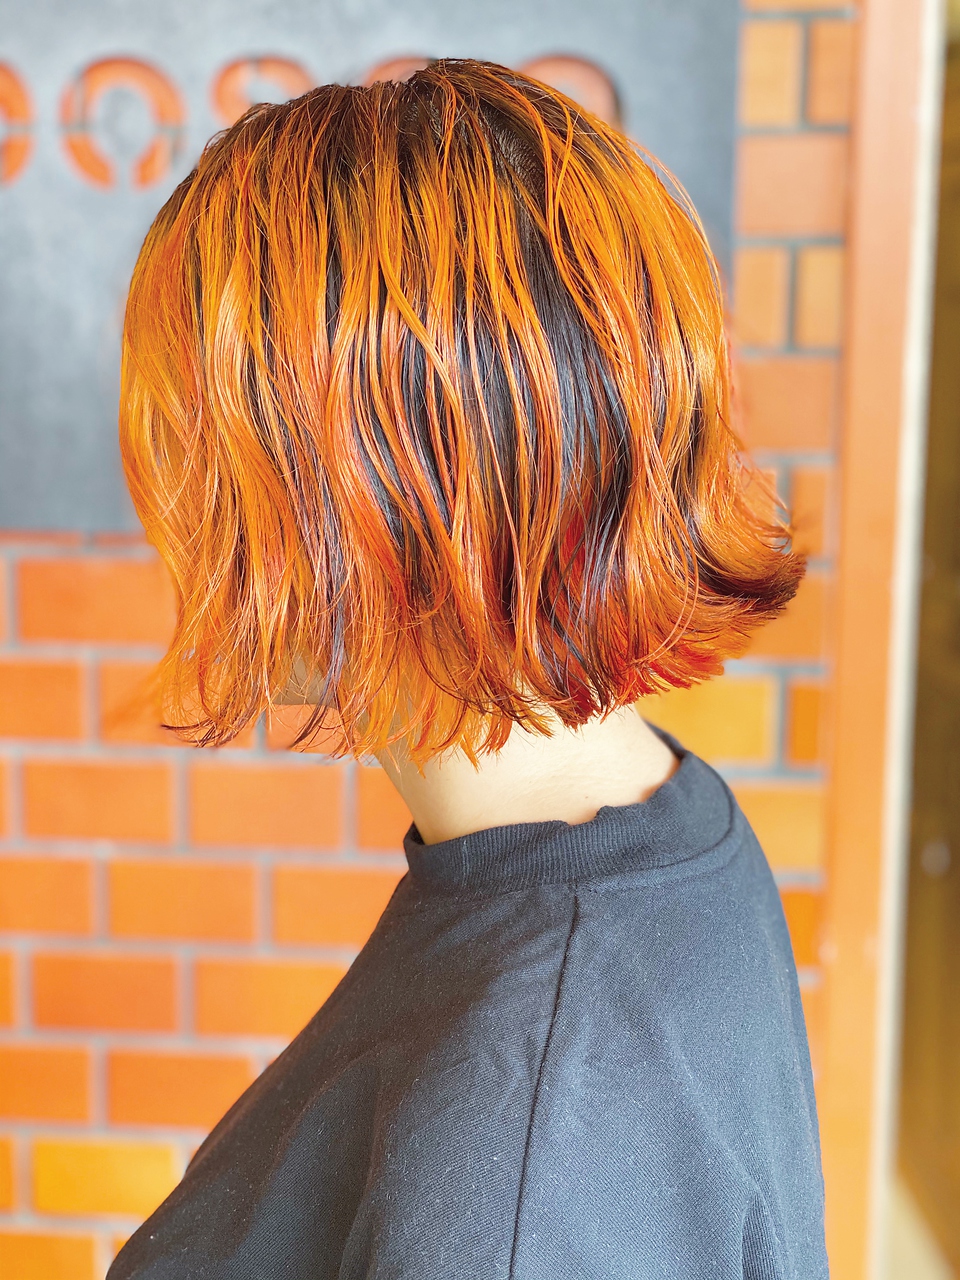 アプリコットオレンジで髪から夏気分 21年のおすすめヘアカラーカタログ ホットペッパービューティーマガジン